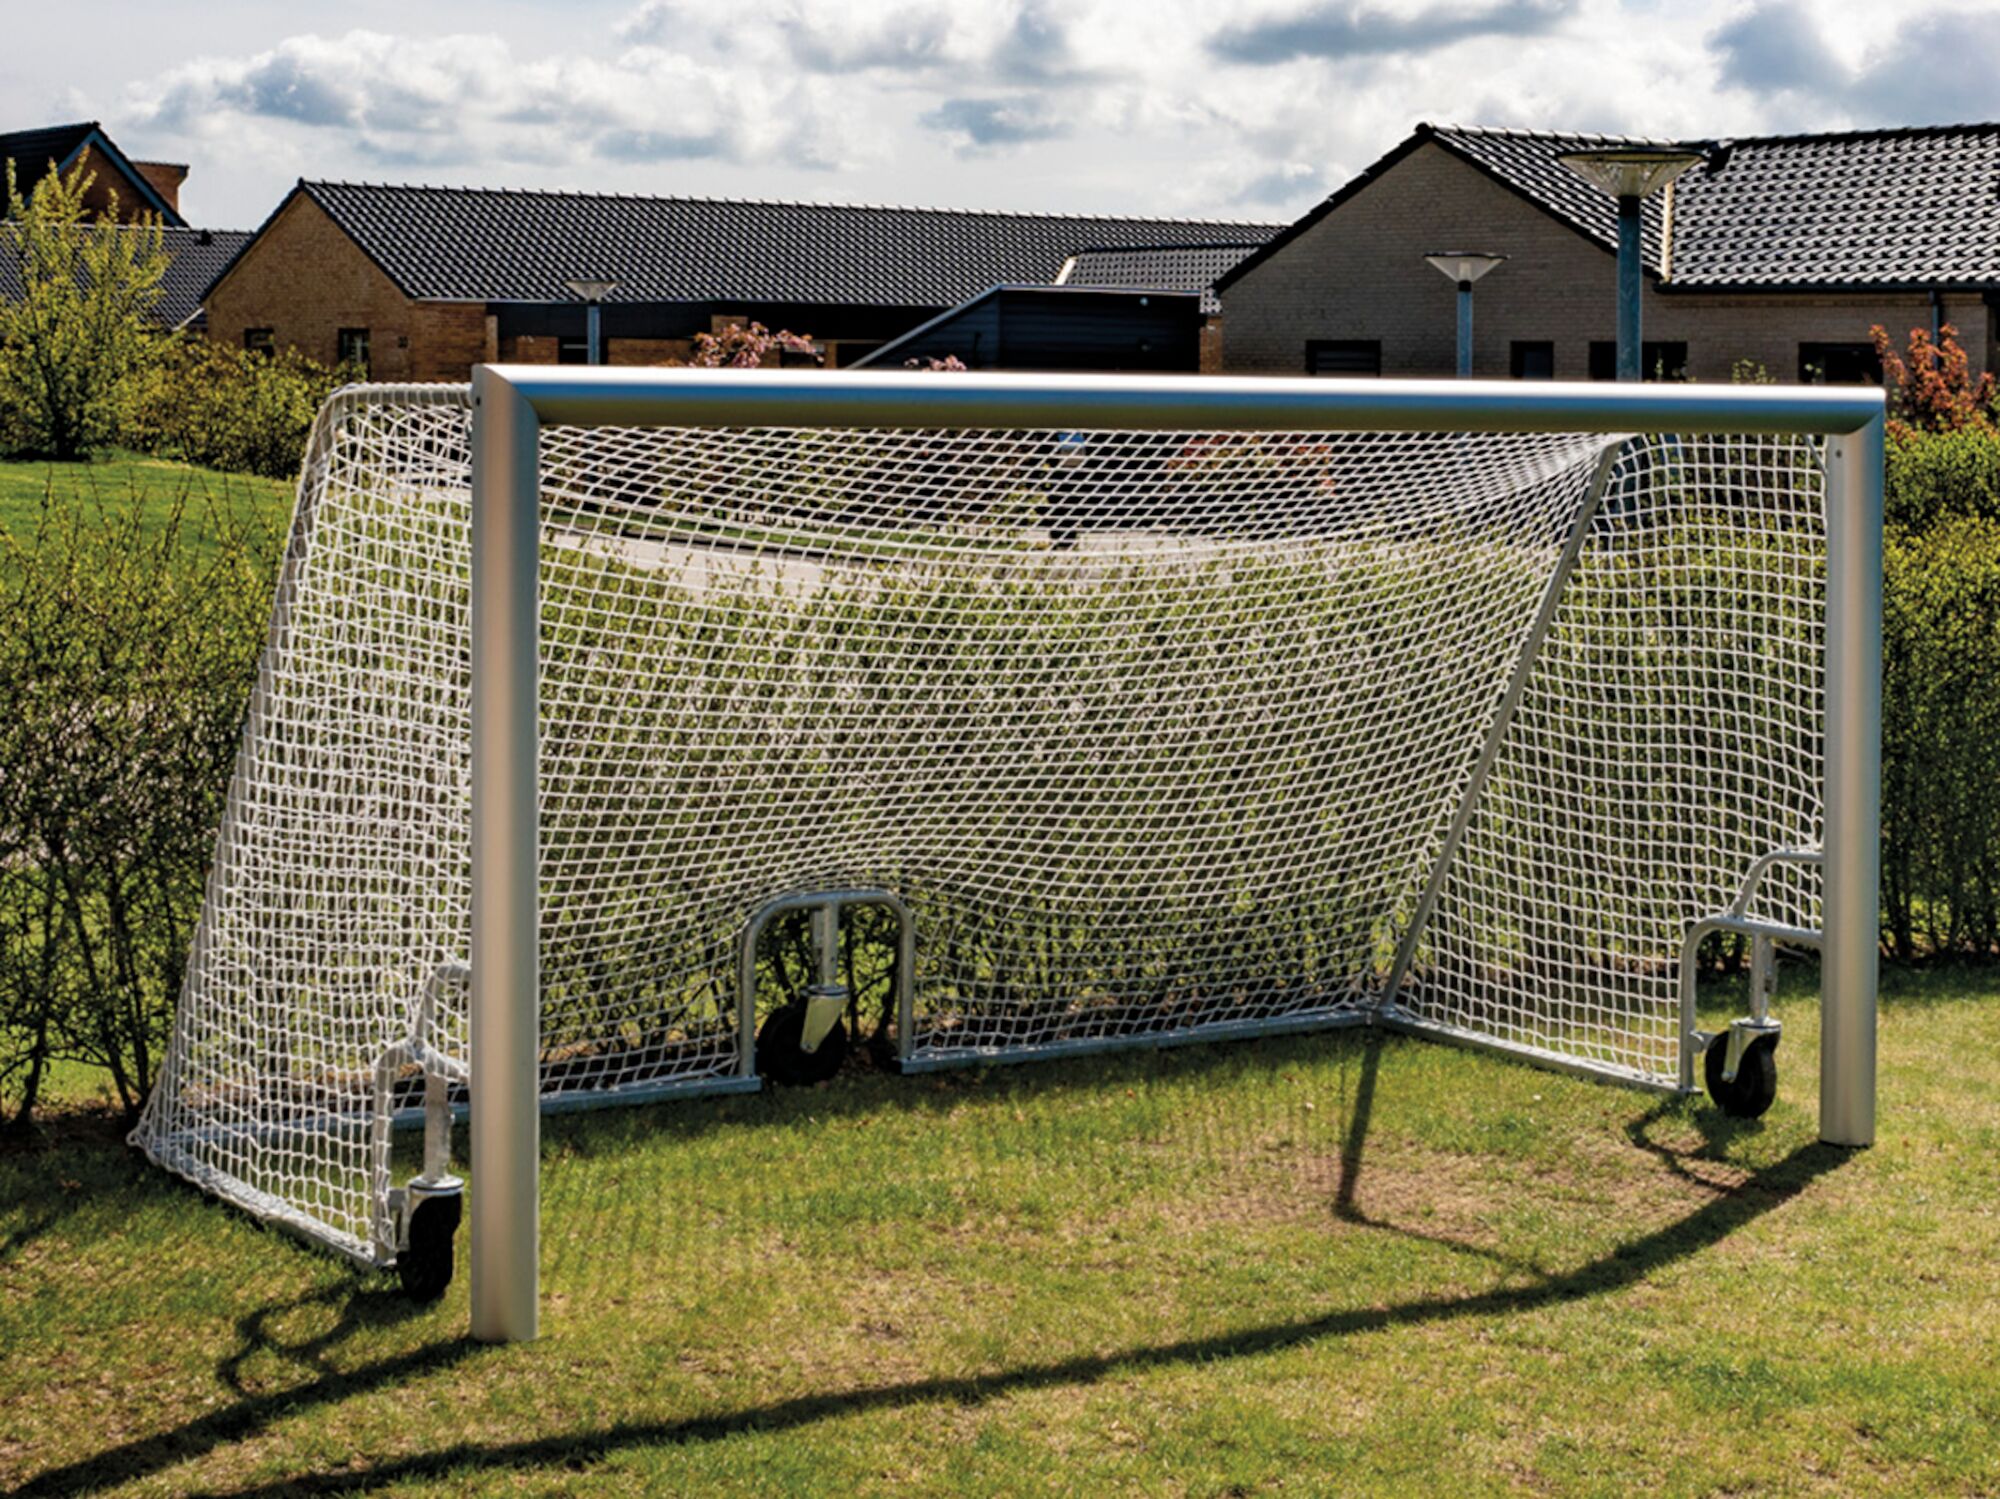 Fodboldmål 5 mands i aluminium, et smart mål til haven